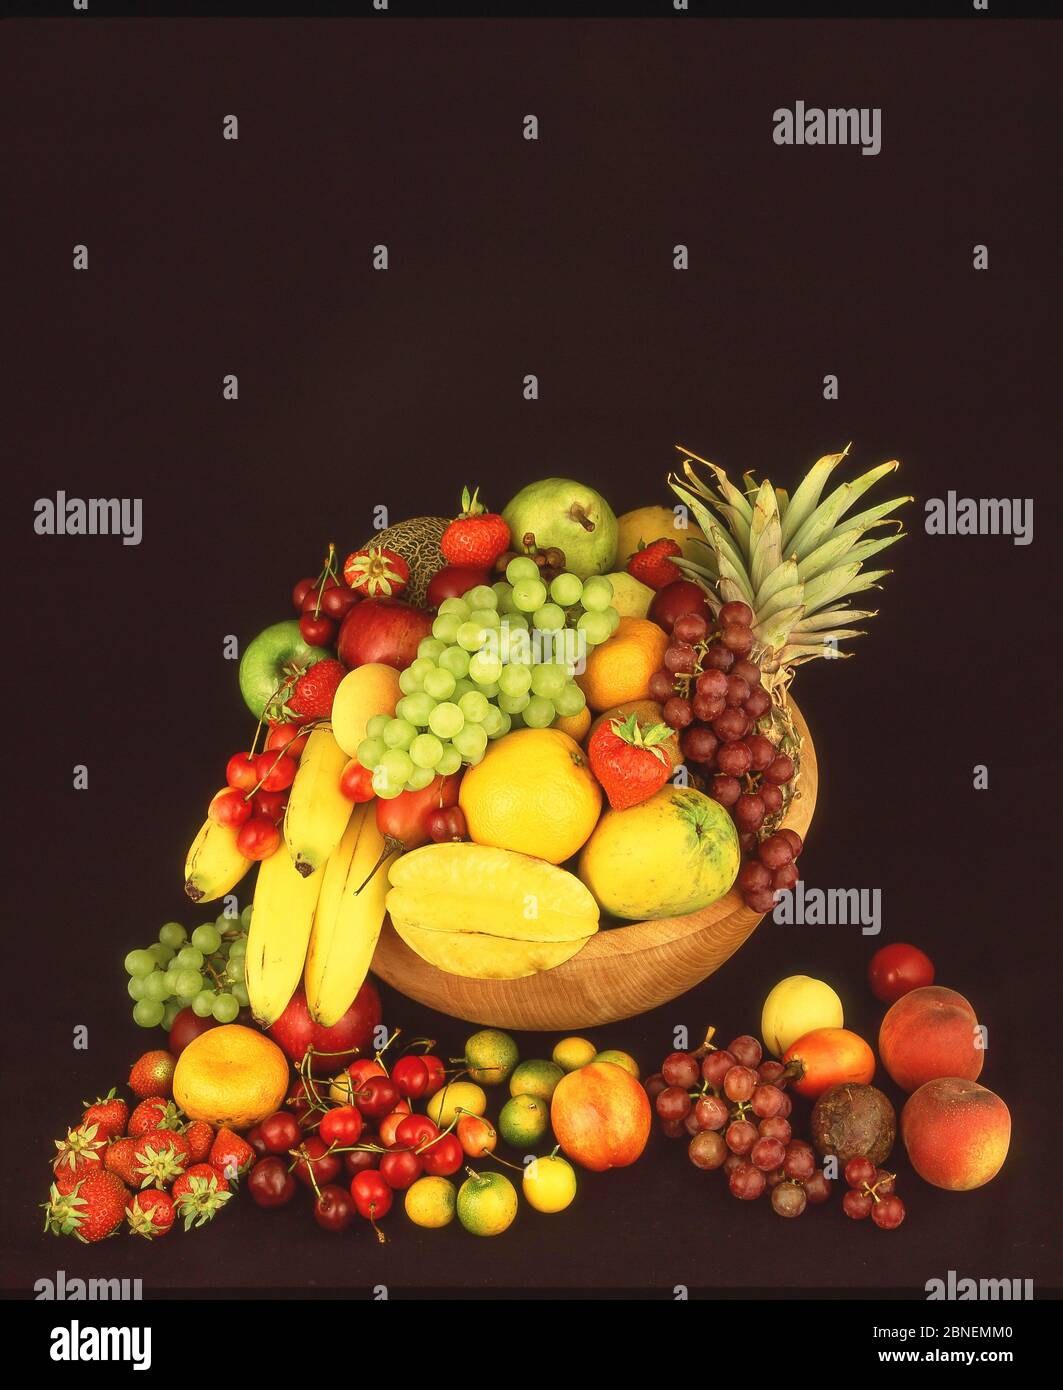 Sélection de fruits et de fruits tropicaux, Greater London, Angleterre, Royaume-Uni Banque D'Images